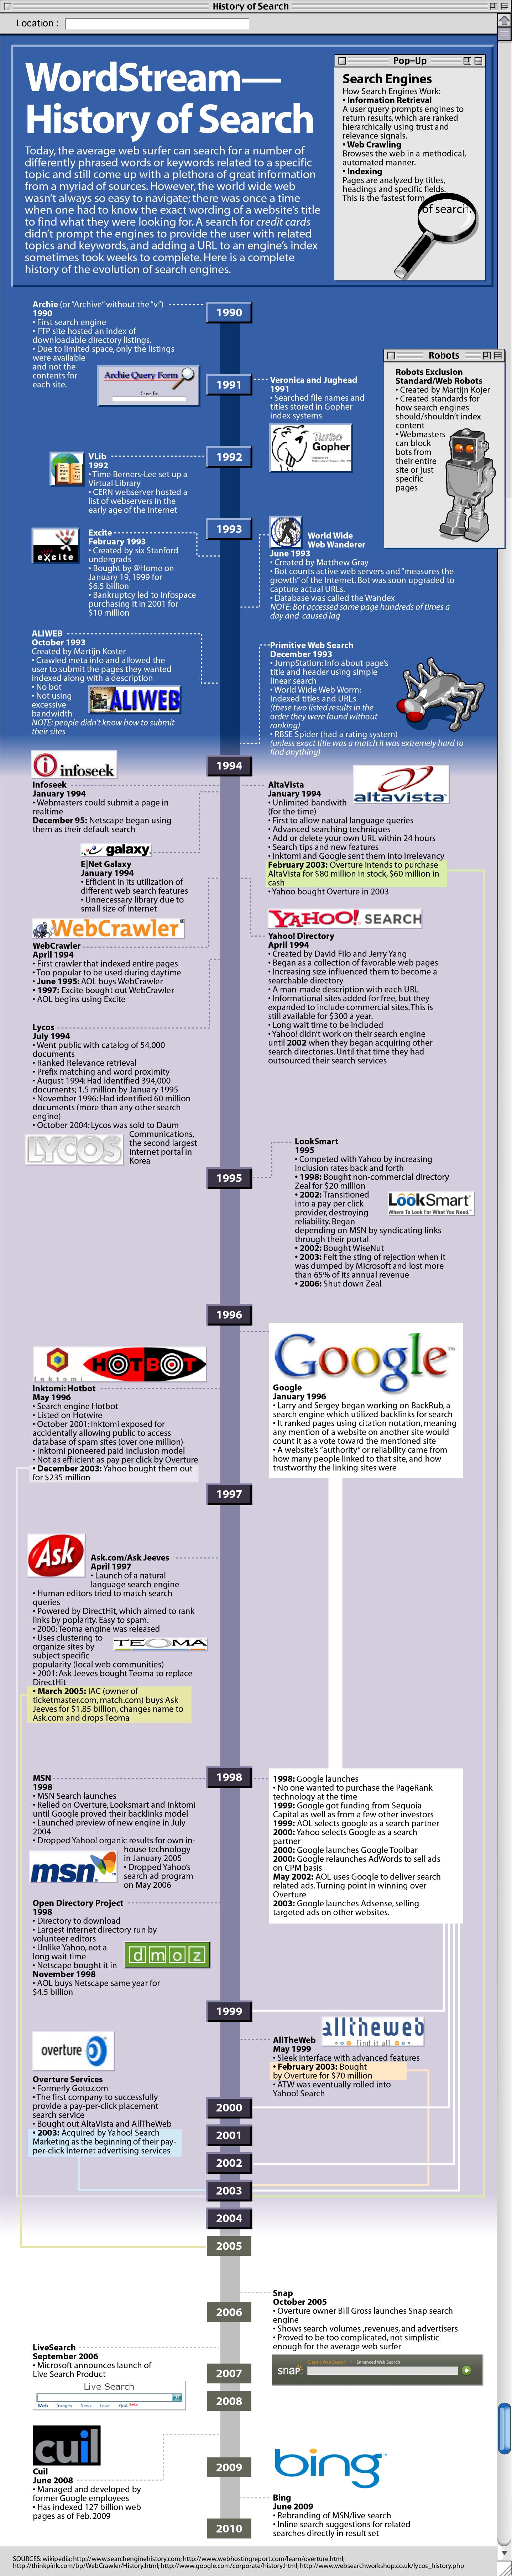 L’histoire des moteurs de recherche